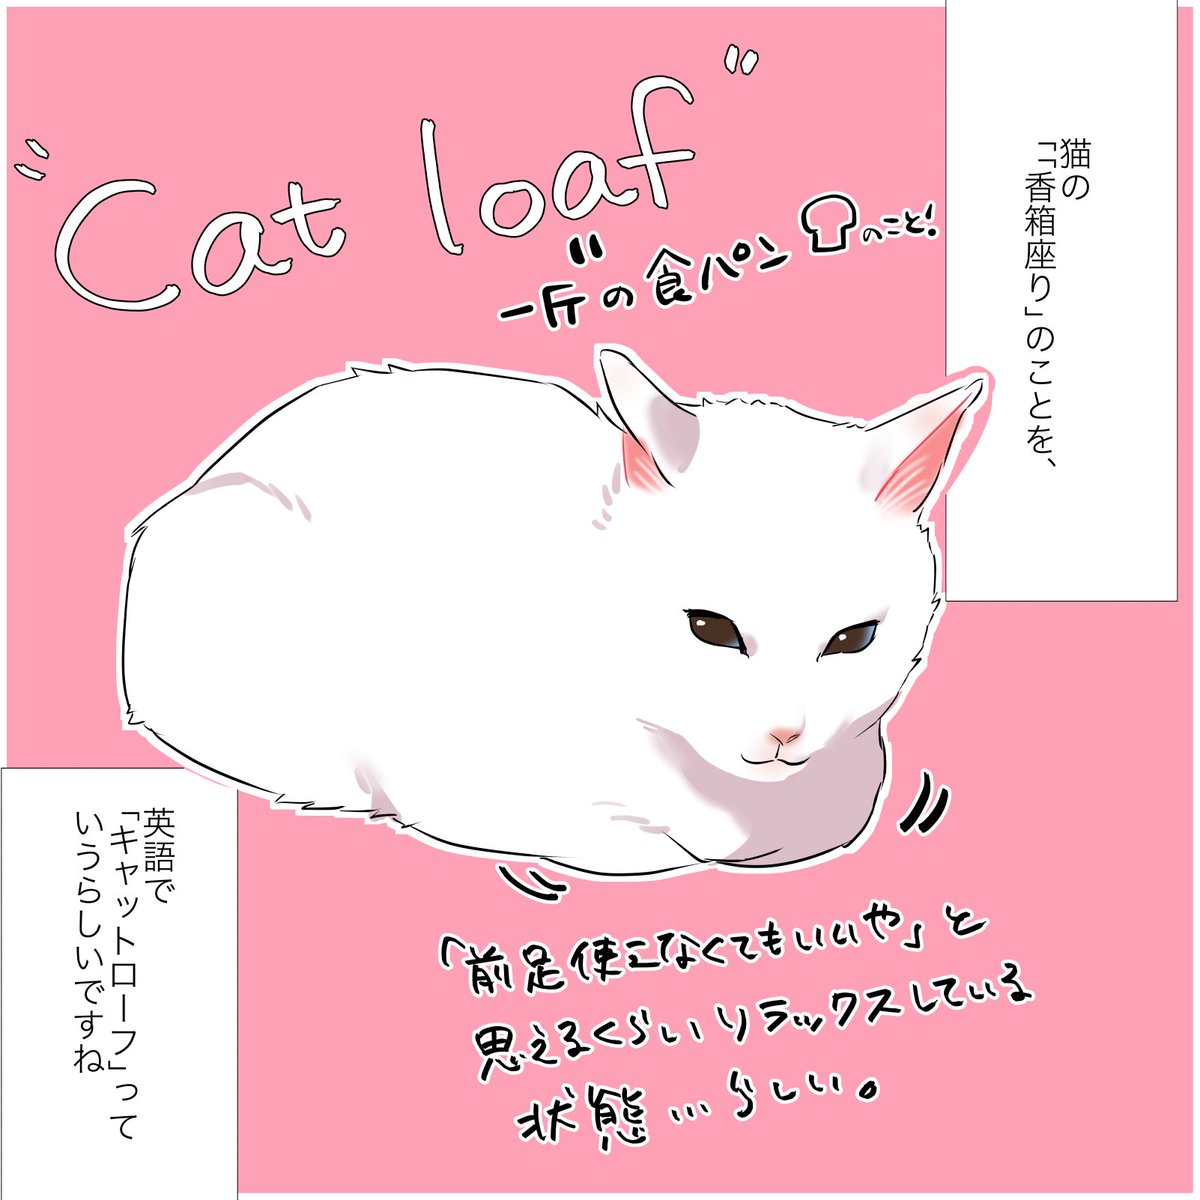 飼い猫がクリスマス🎄の"アレ"に似てる話(1/2)
 #漫画が読めるハッシュタグ
 #愛されたがりの白猫ミコさん 